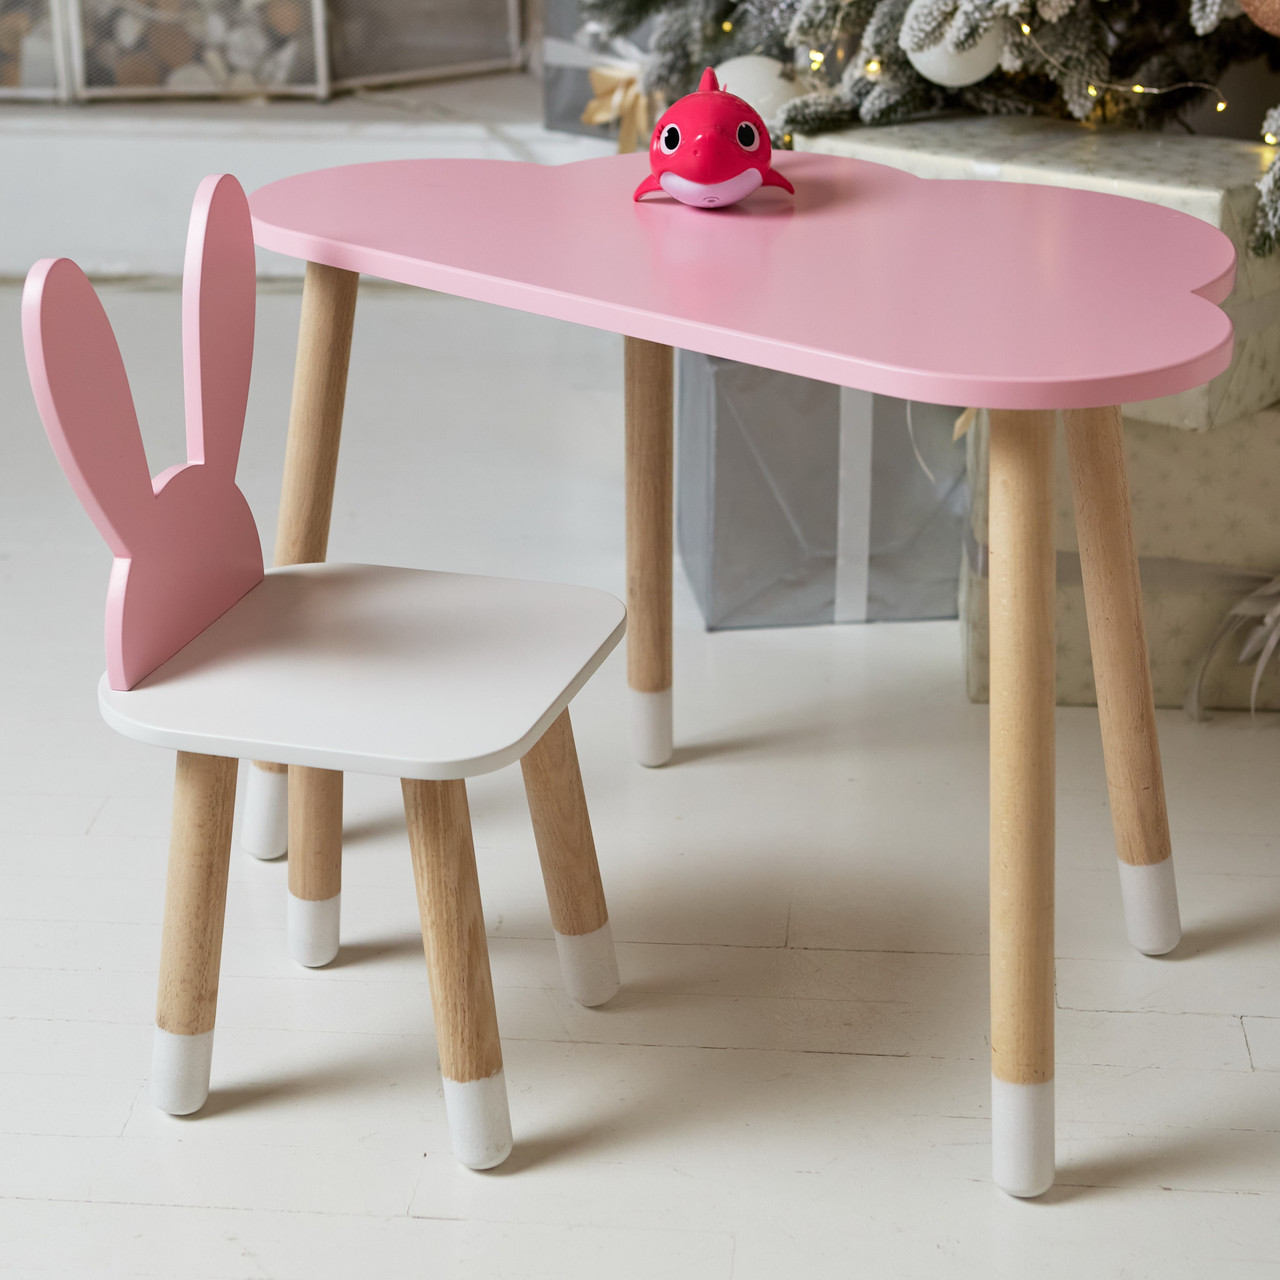 Дитячий столик хмарка і стільчик вушка зайчика рожеві з білим сидінням. Столик для ігор, занять, їжі, фото 1